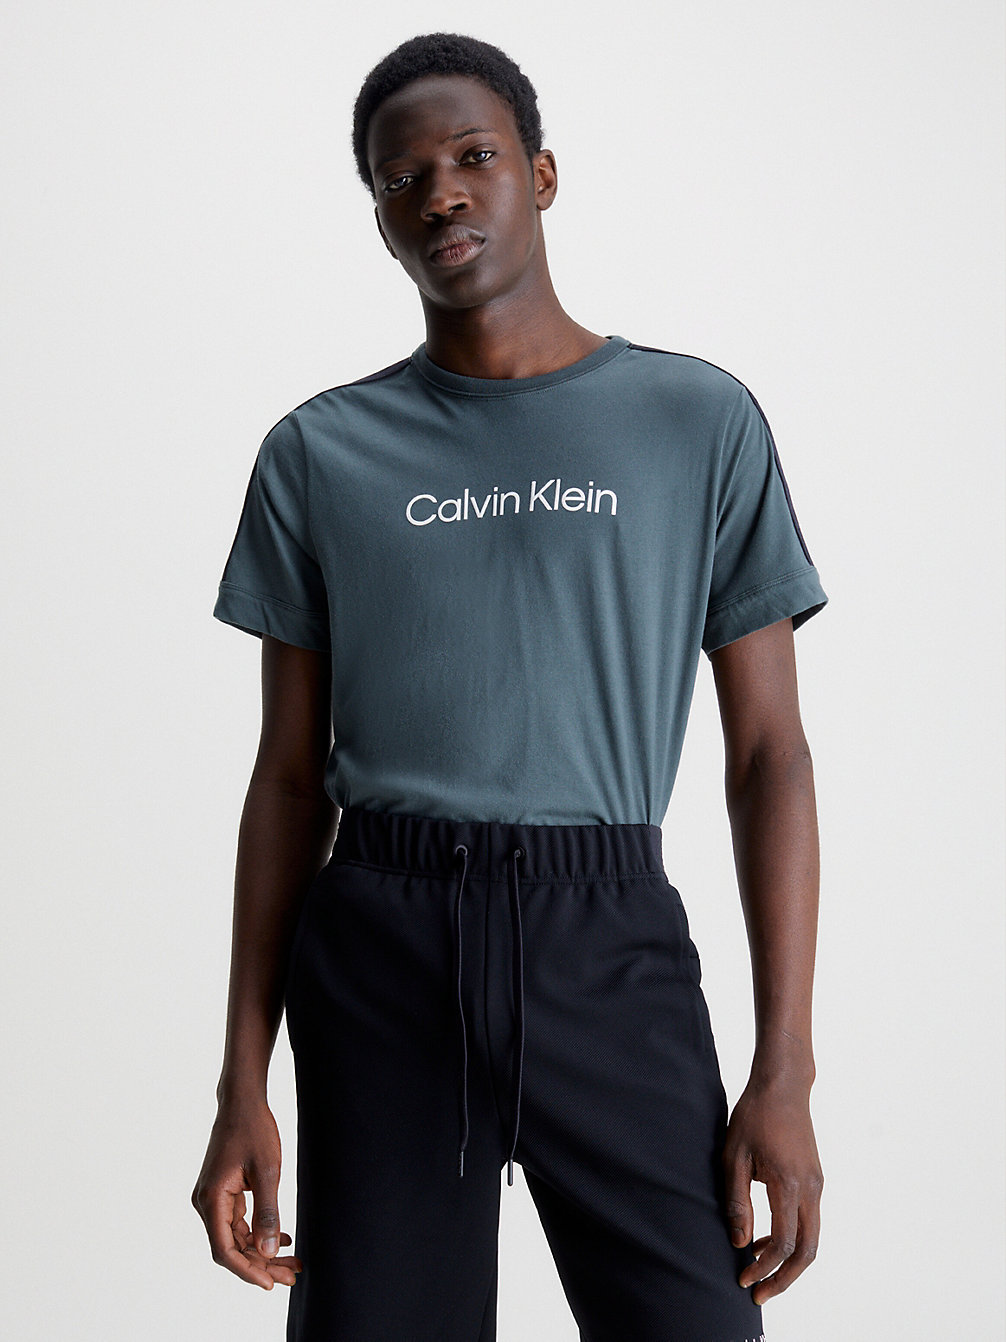 URBAN CHIC Zacht Sport T-Shirt undefined heren Calvin Klein